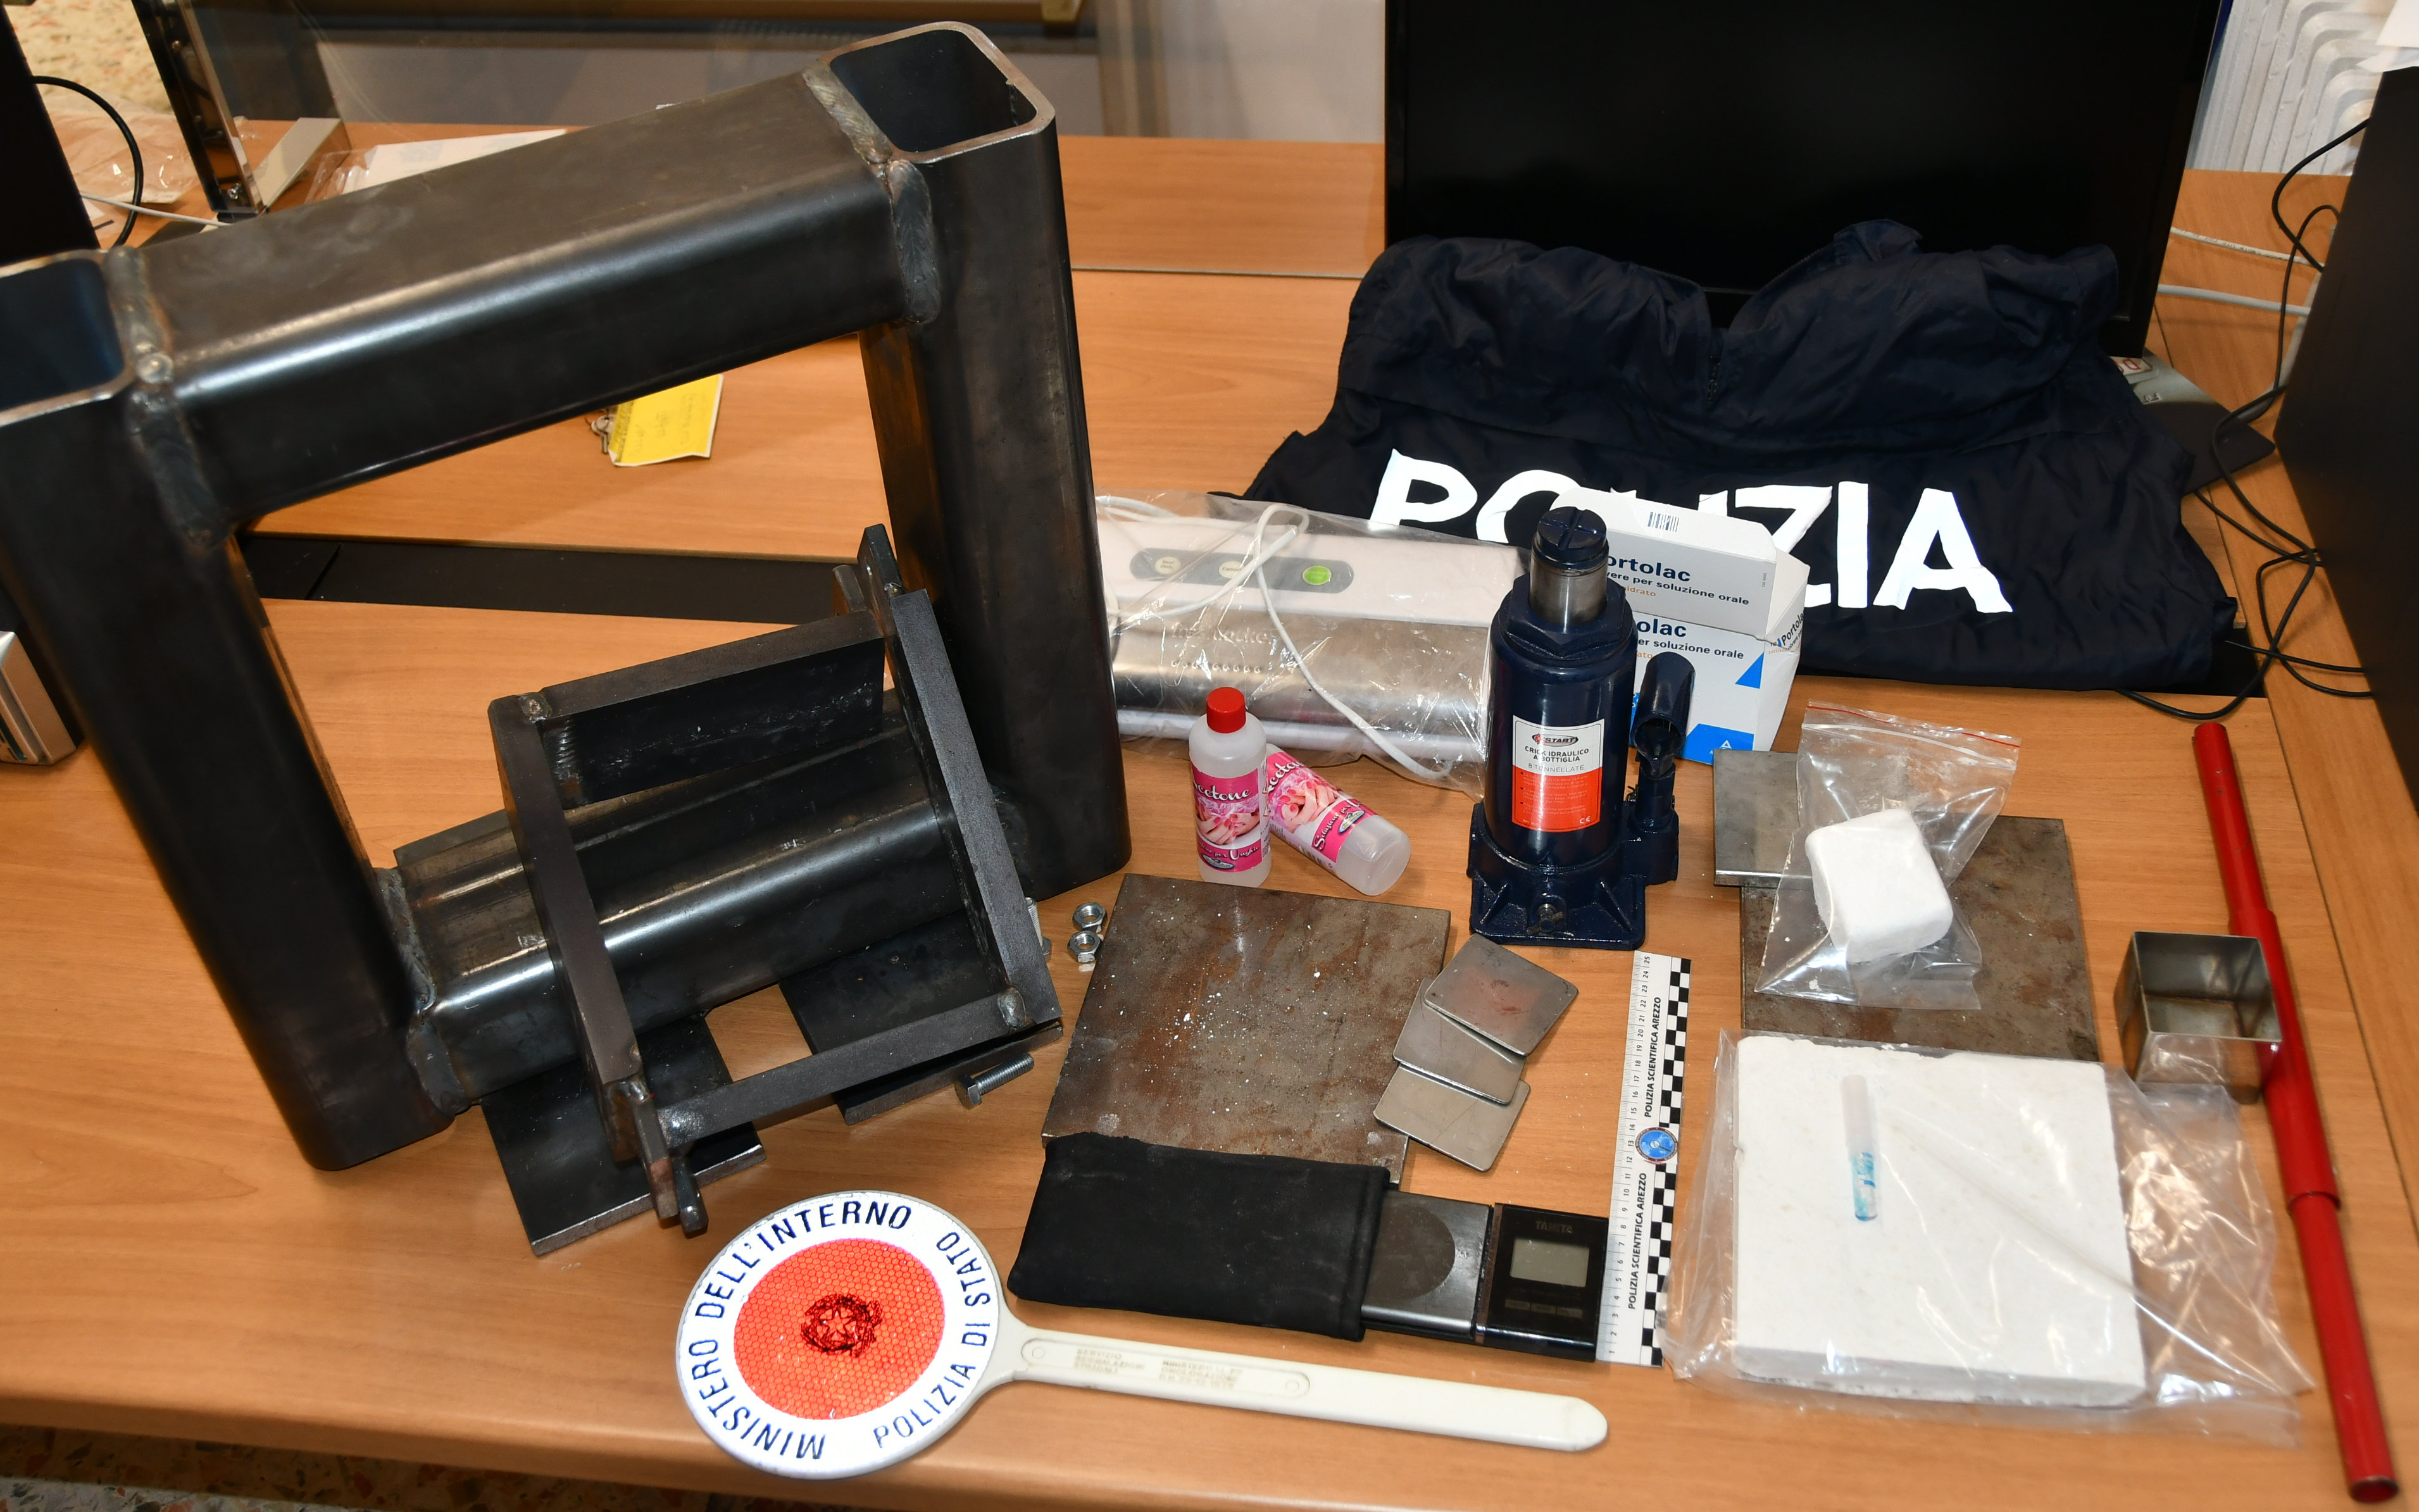 La Polizia di Stato arresta a Sansepolcro un cittadino albanese per detenzione a fini di spaccio  di un chilogrammo di cocaina purissima